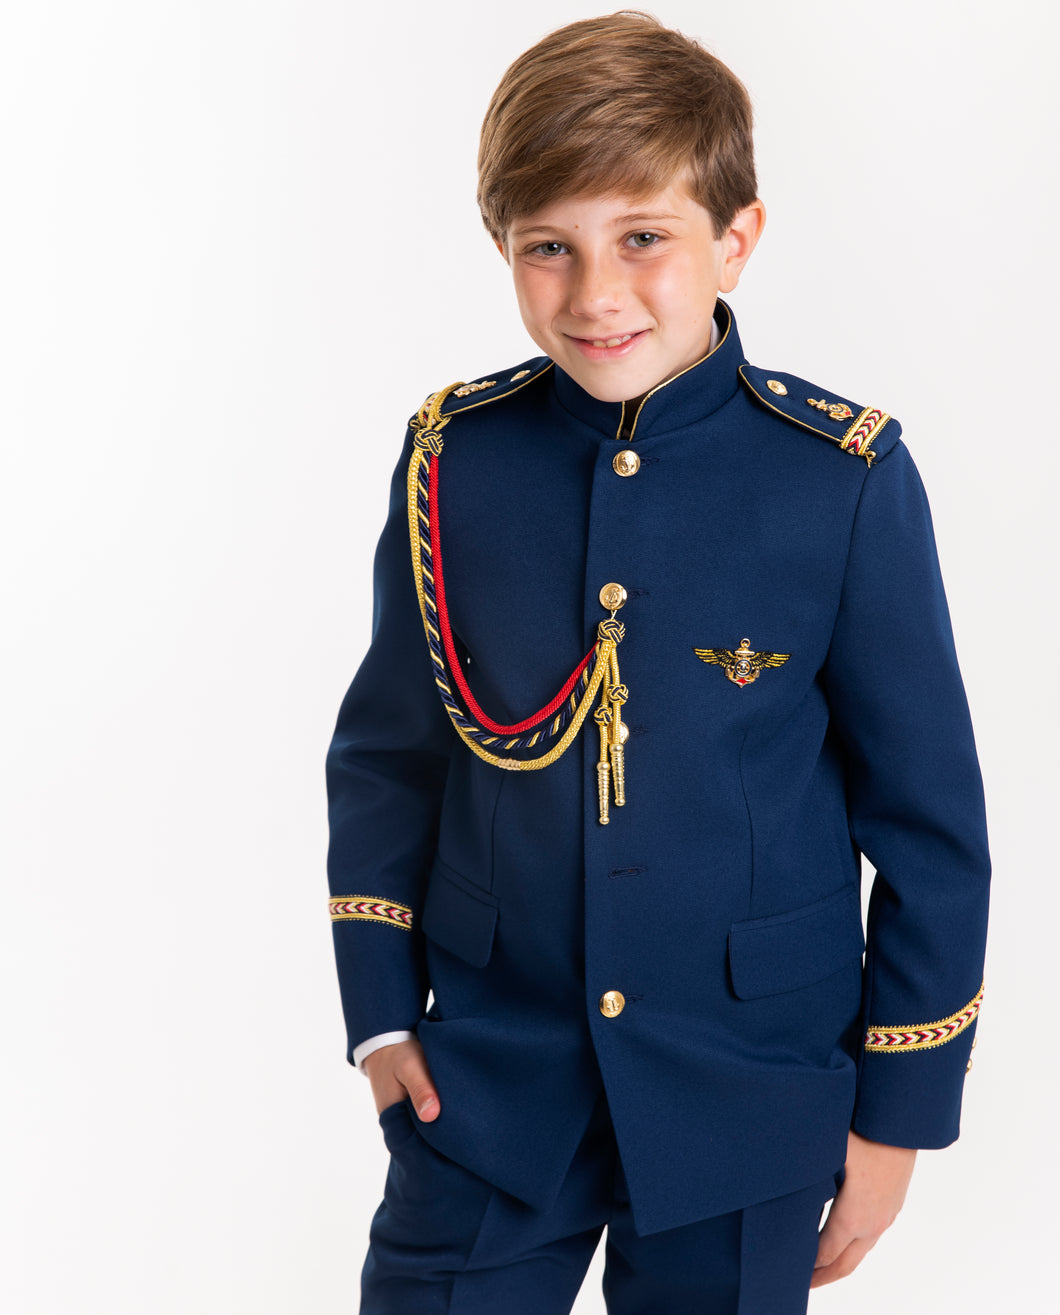 Admiral Helmsman Communion Suit 2584